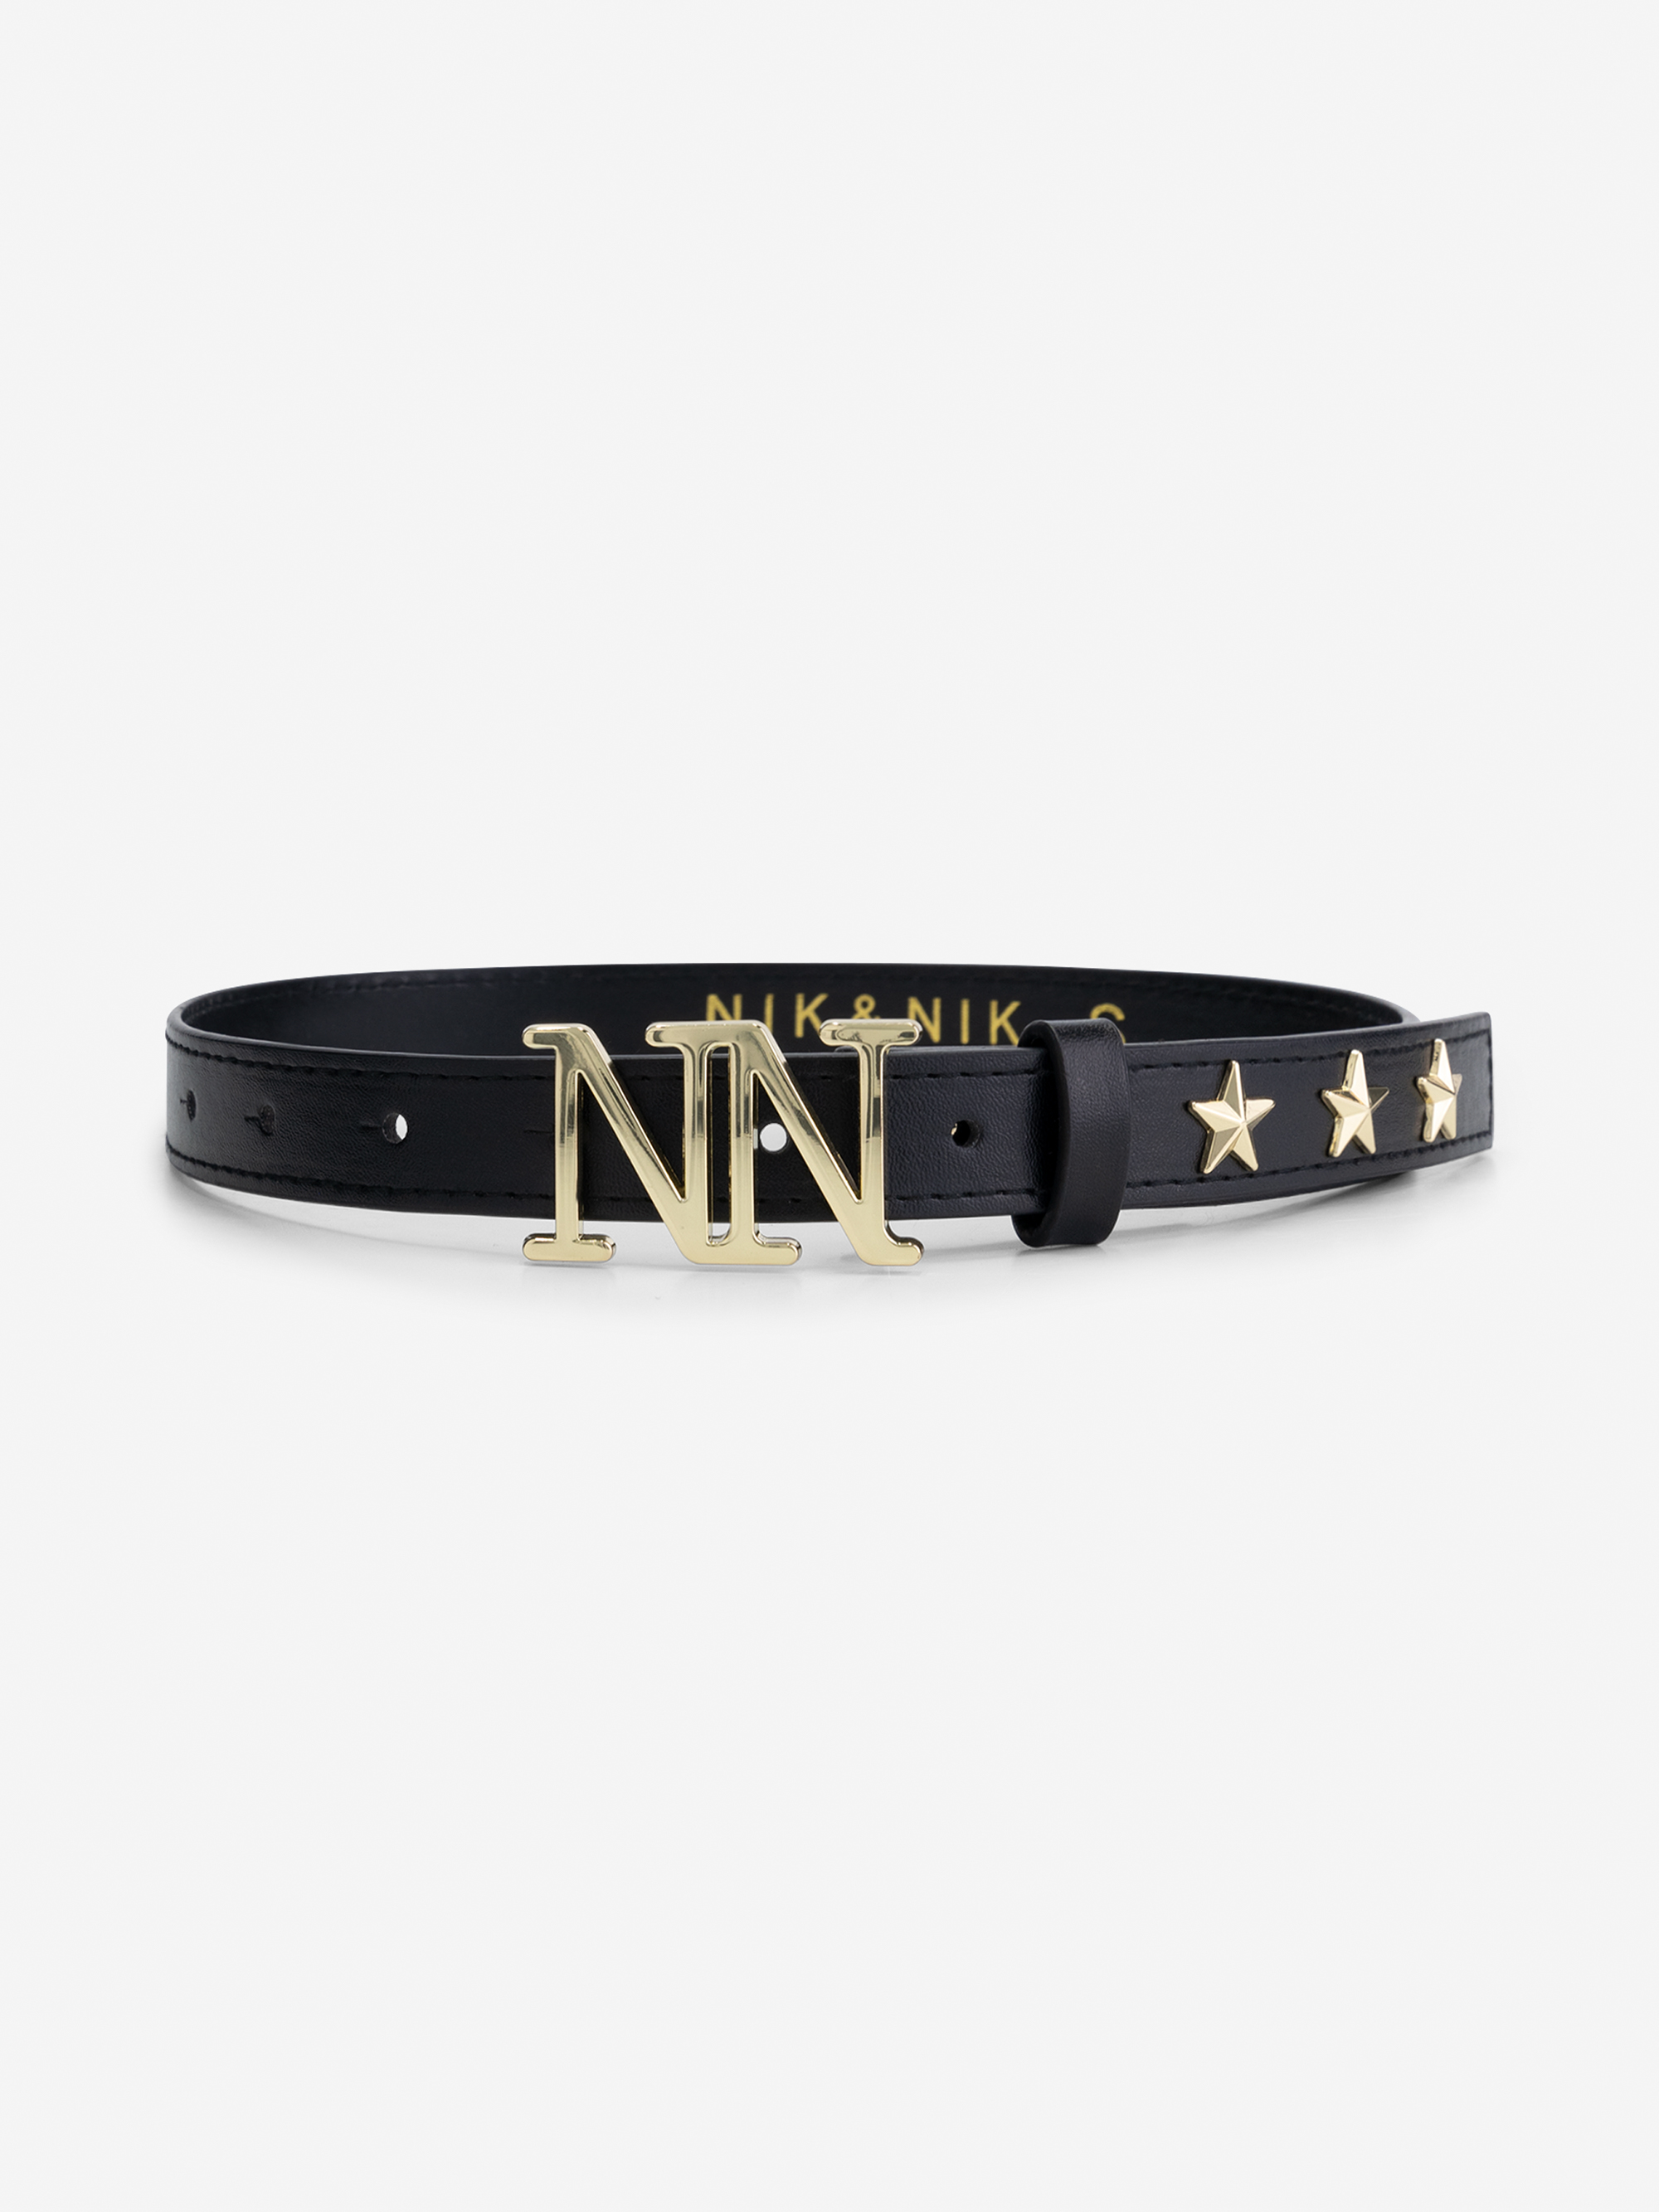 NN waist belt with golden stars